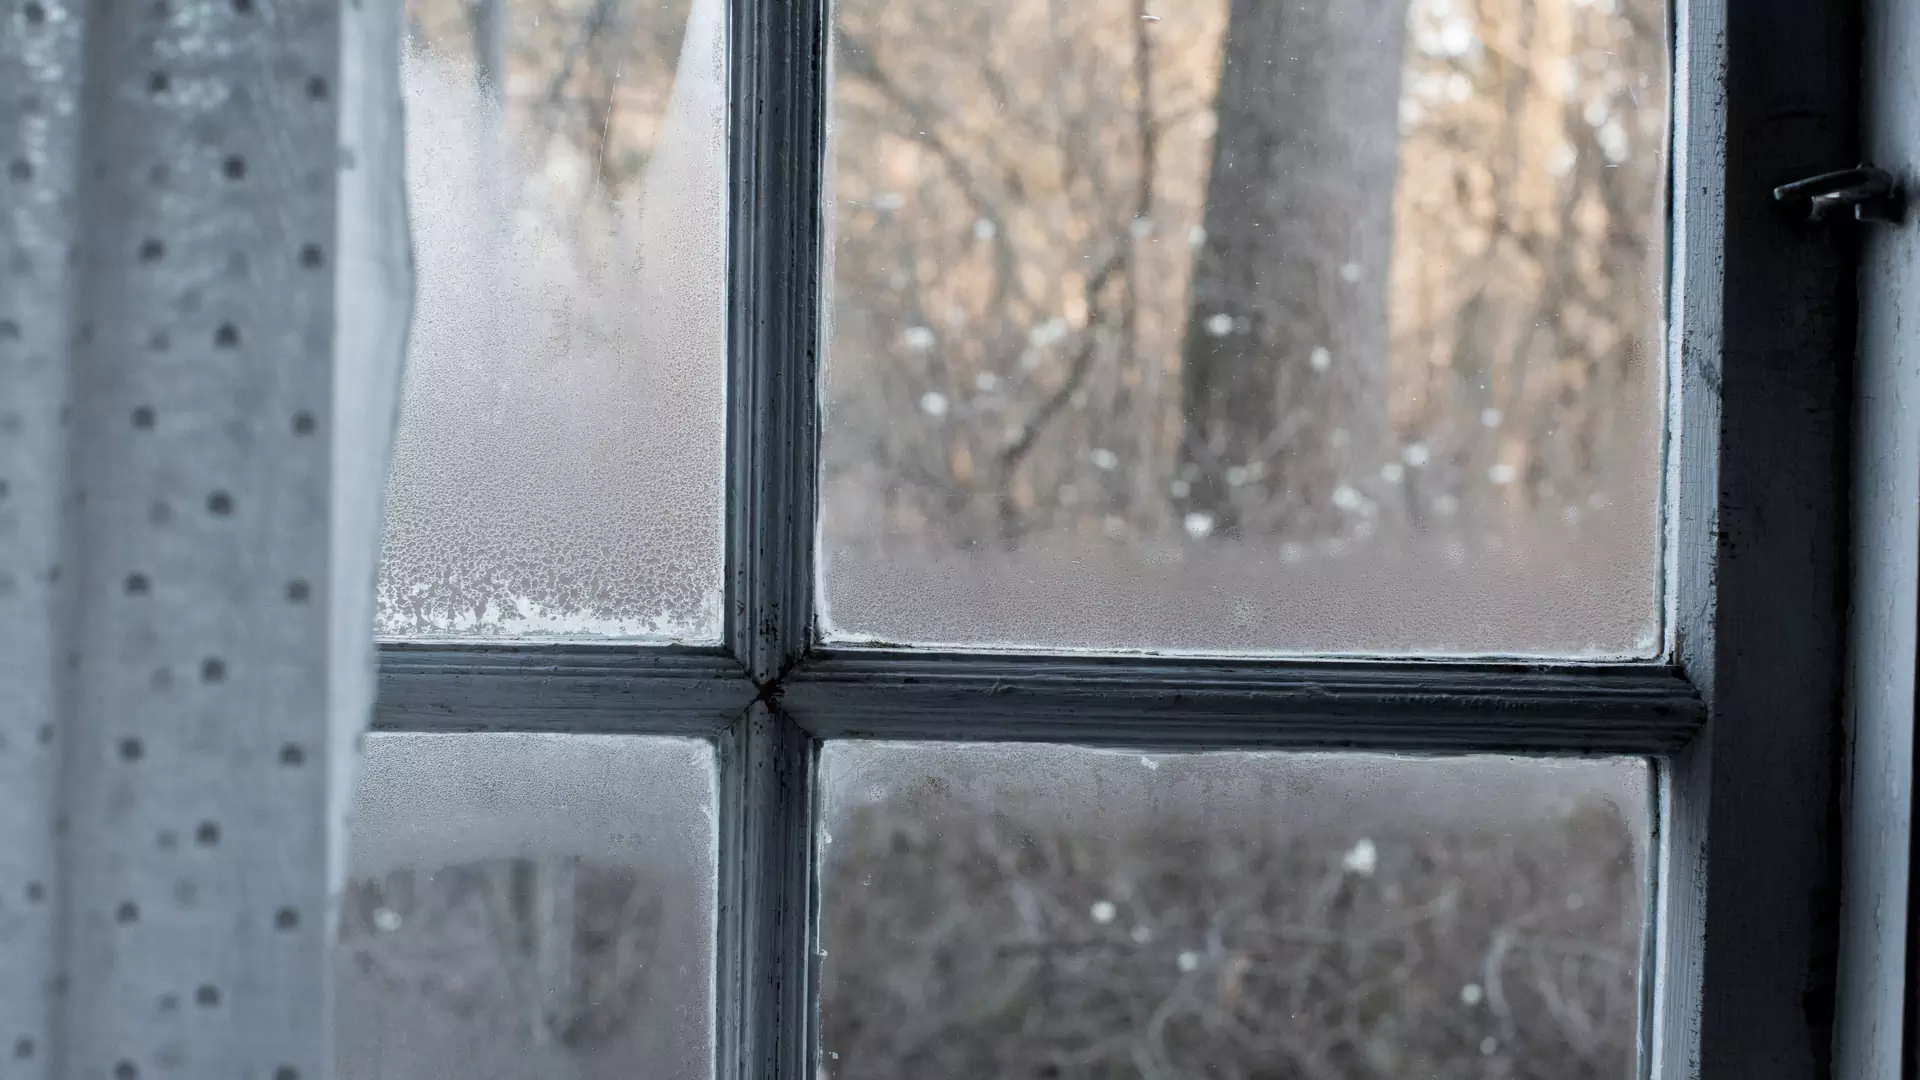 Zaparowane okna w domu — pomoże pochłaniacz wilgoci lub osuszacz powietrza